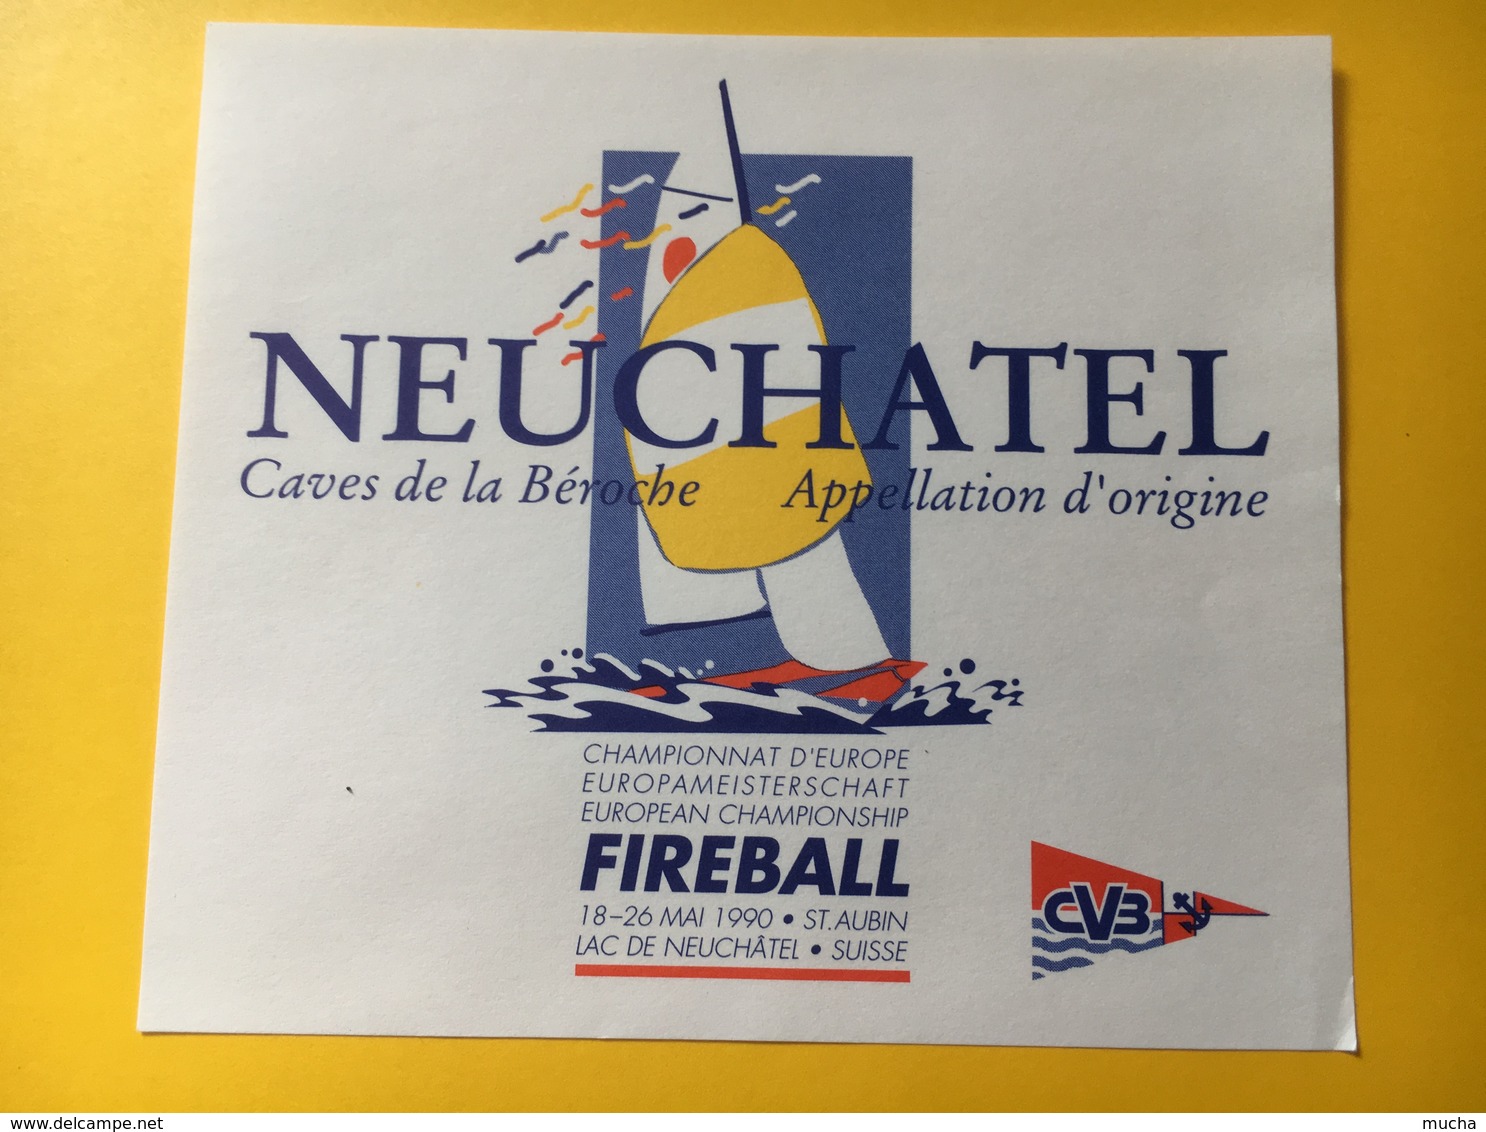 8648 - Neuchâtel Caves De La Béroche Championnat D'Europe Fireball St-Aubin 1990 Suisse - Sailboats & Sailing Vessels